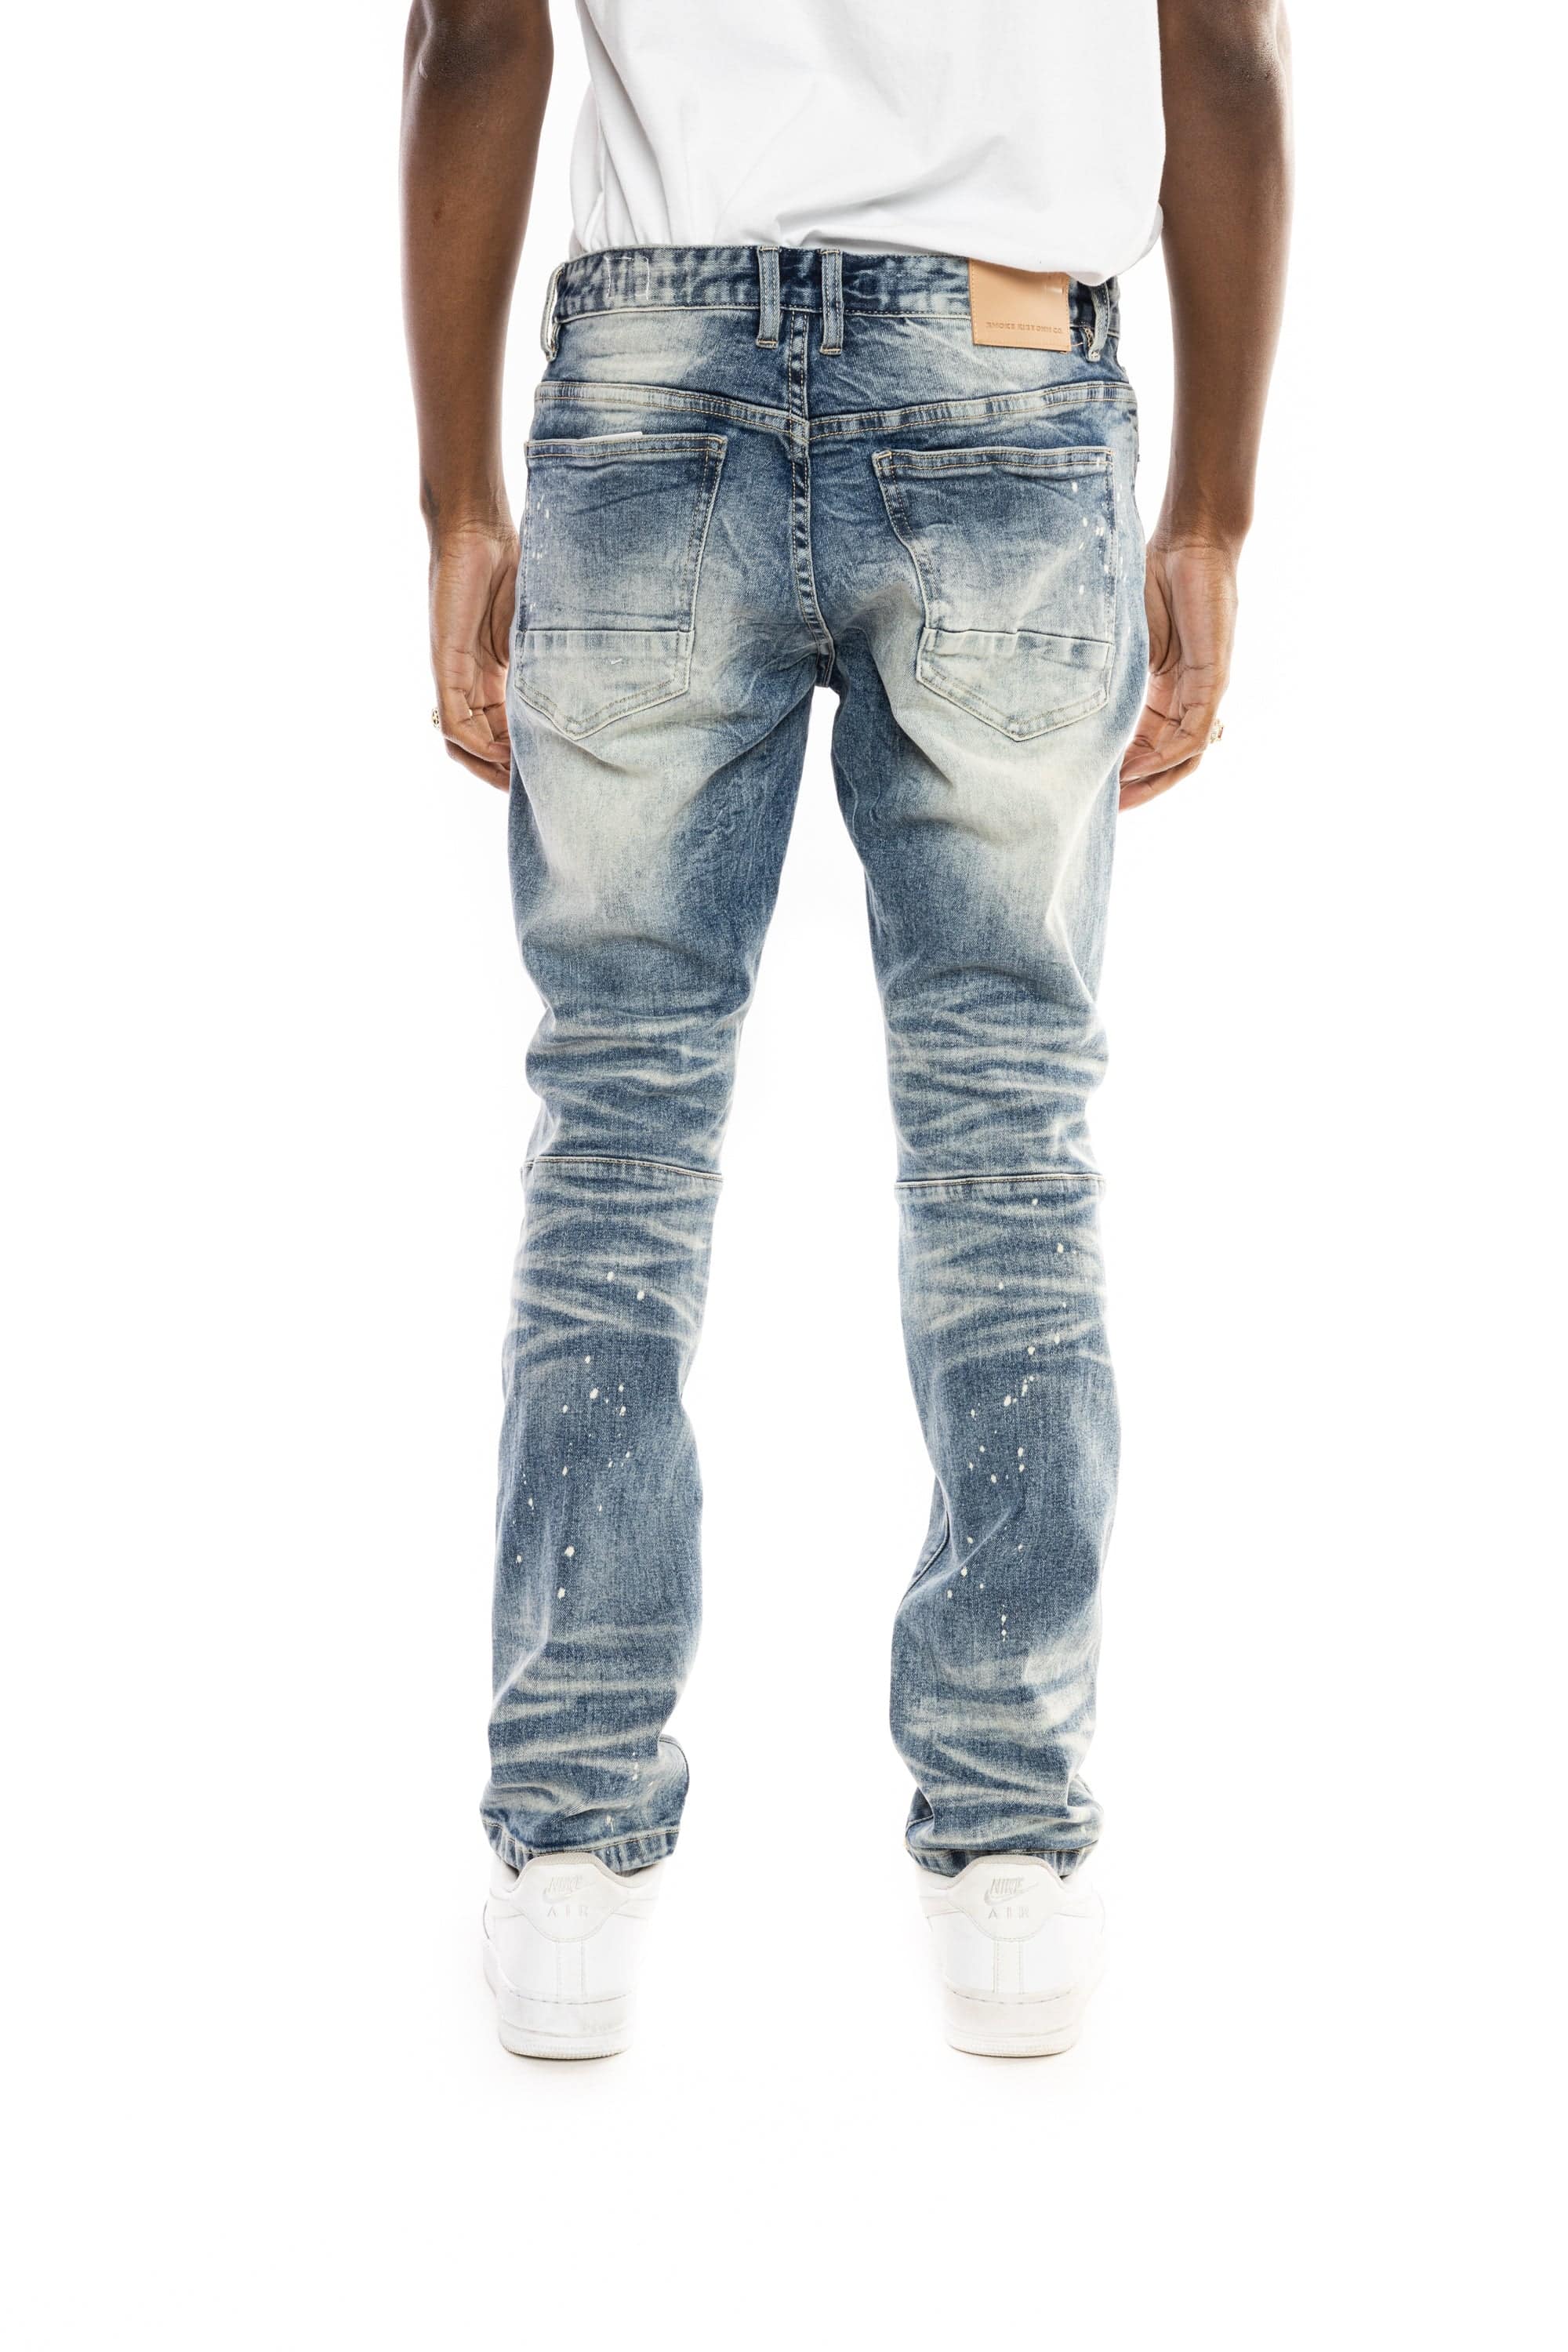 Rip & Repair Jeans Aiden Blue - Smoke Rise